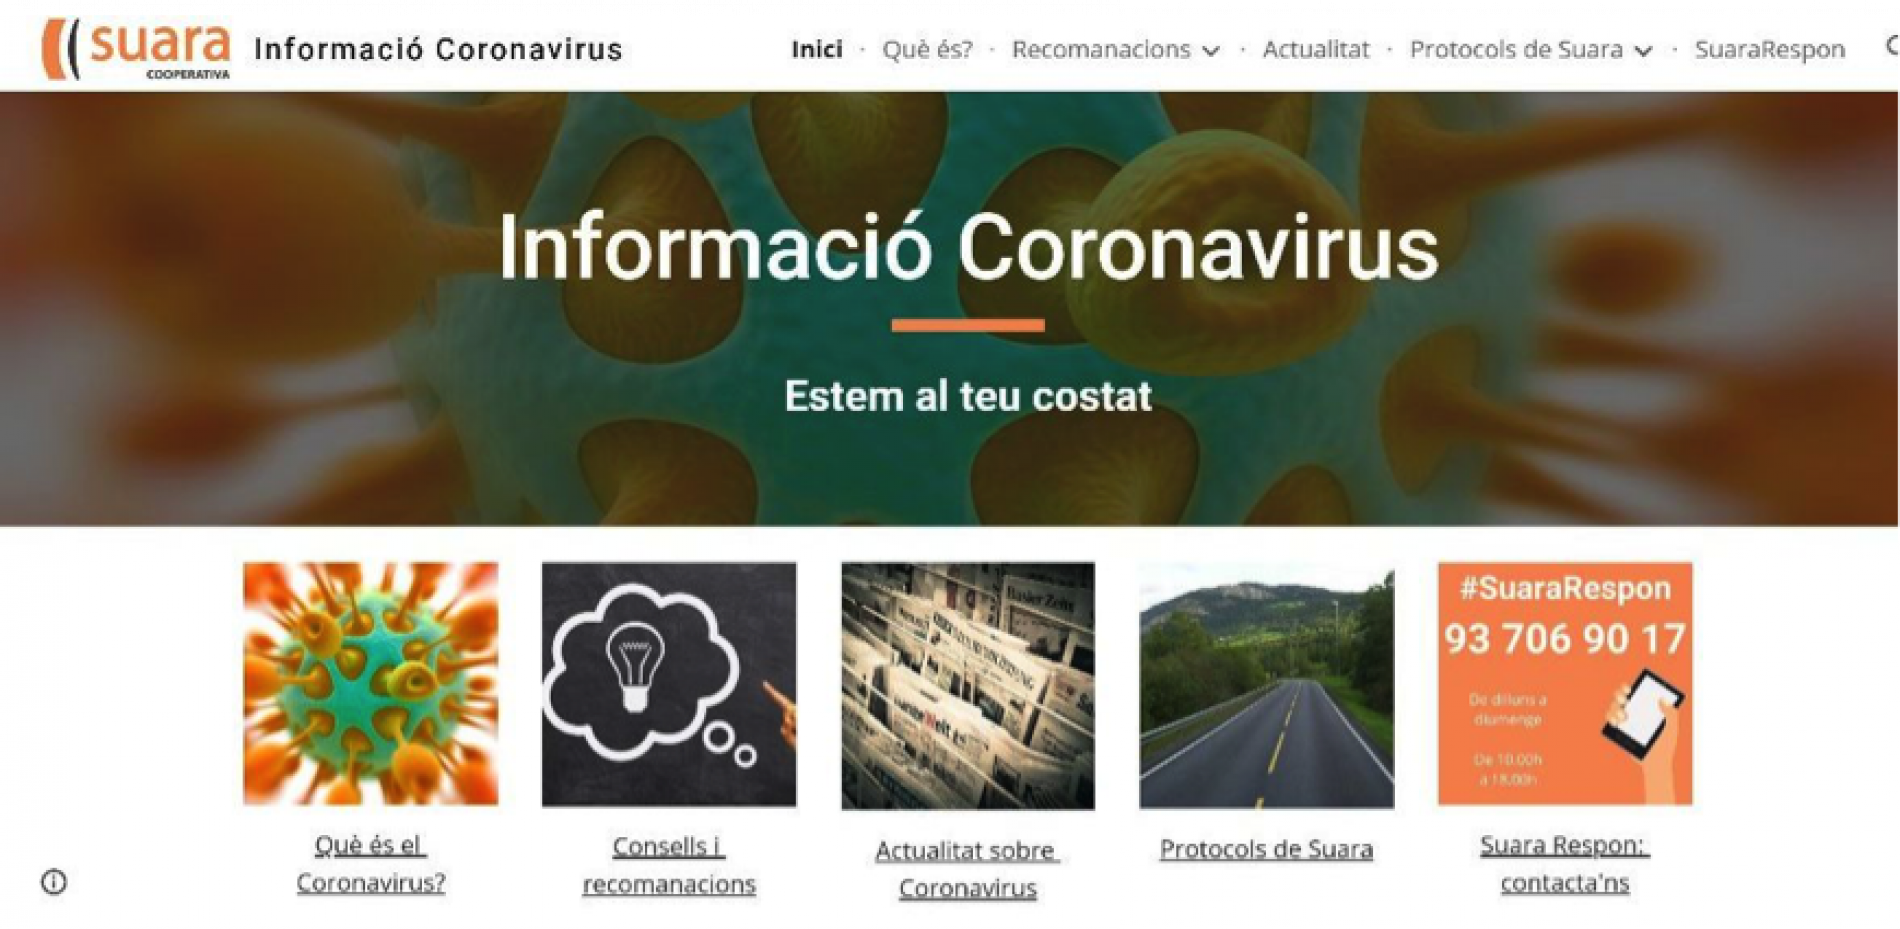 Suara habilita un web especial amb informació sobre Coronavirus i un telèfon d’atenció ciutadana